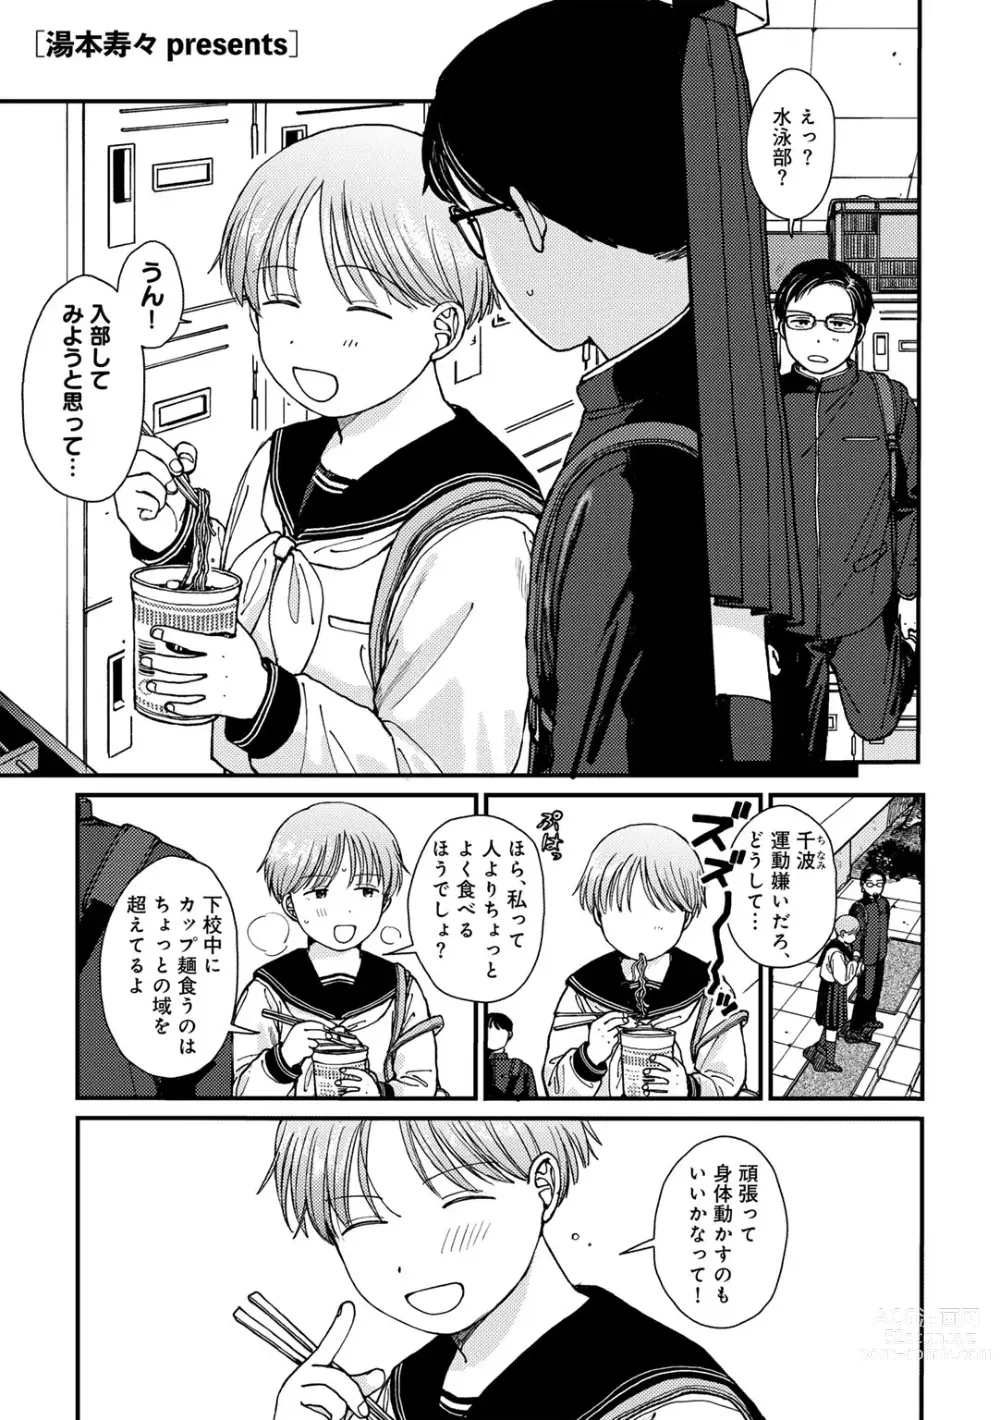 Page 3 of manga COMIC kisshug vol.4